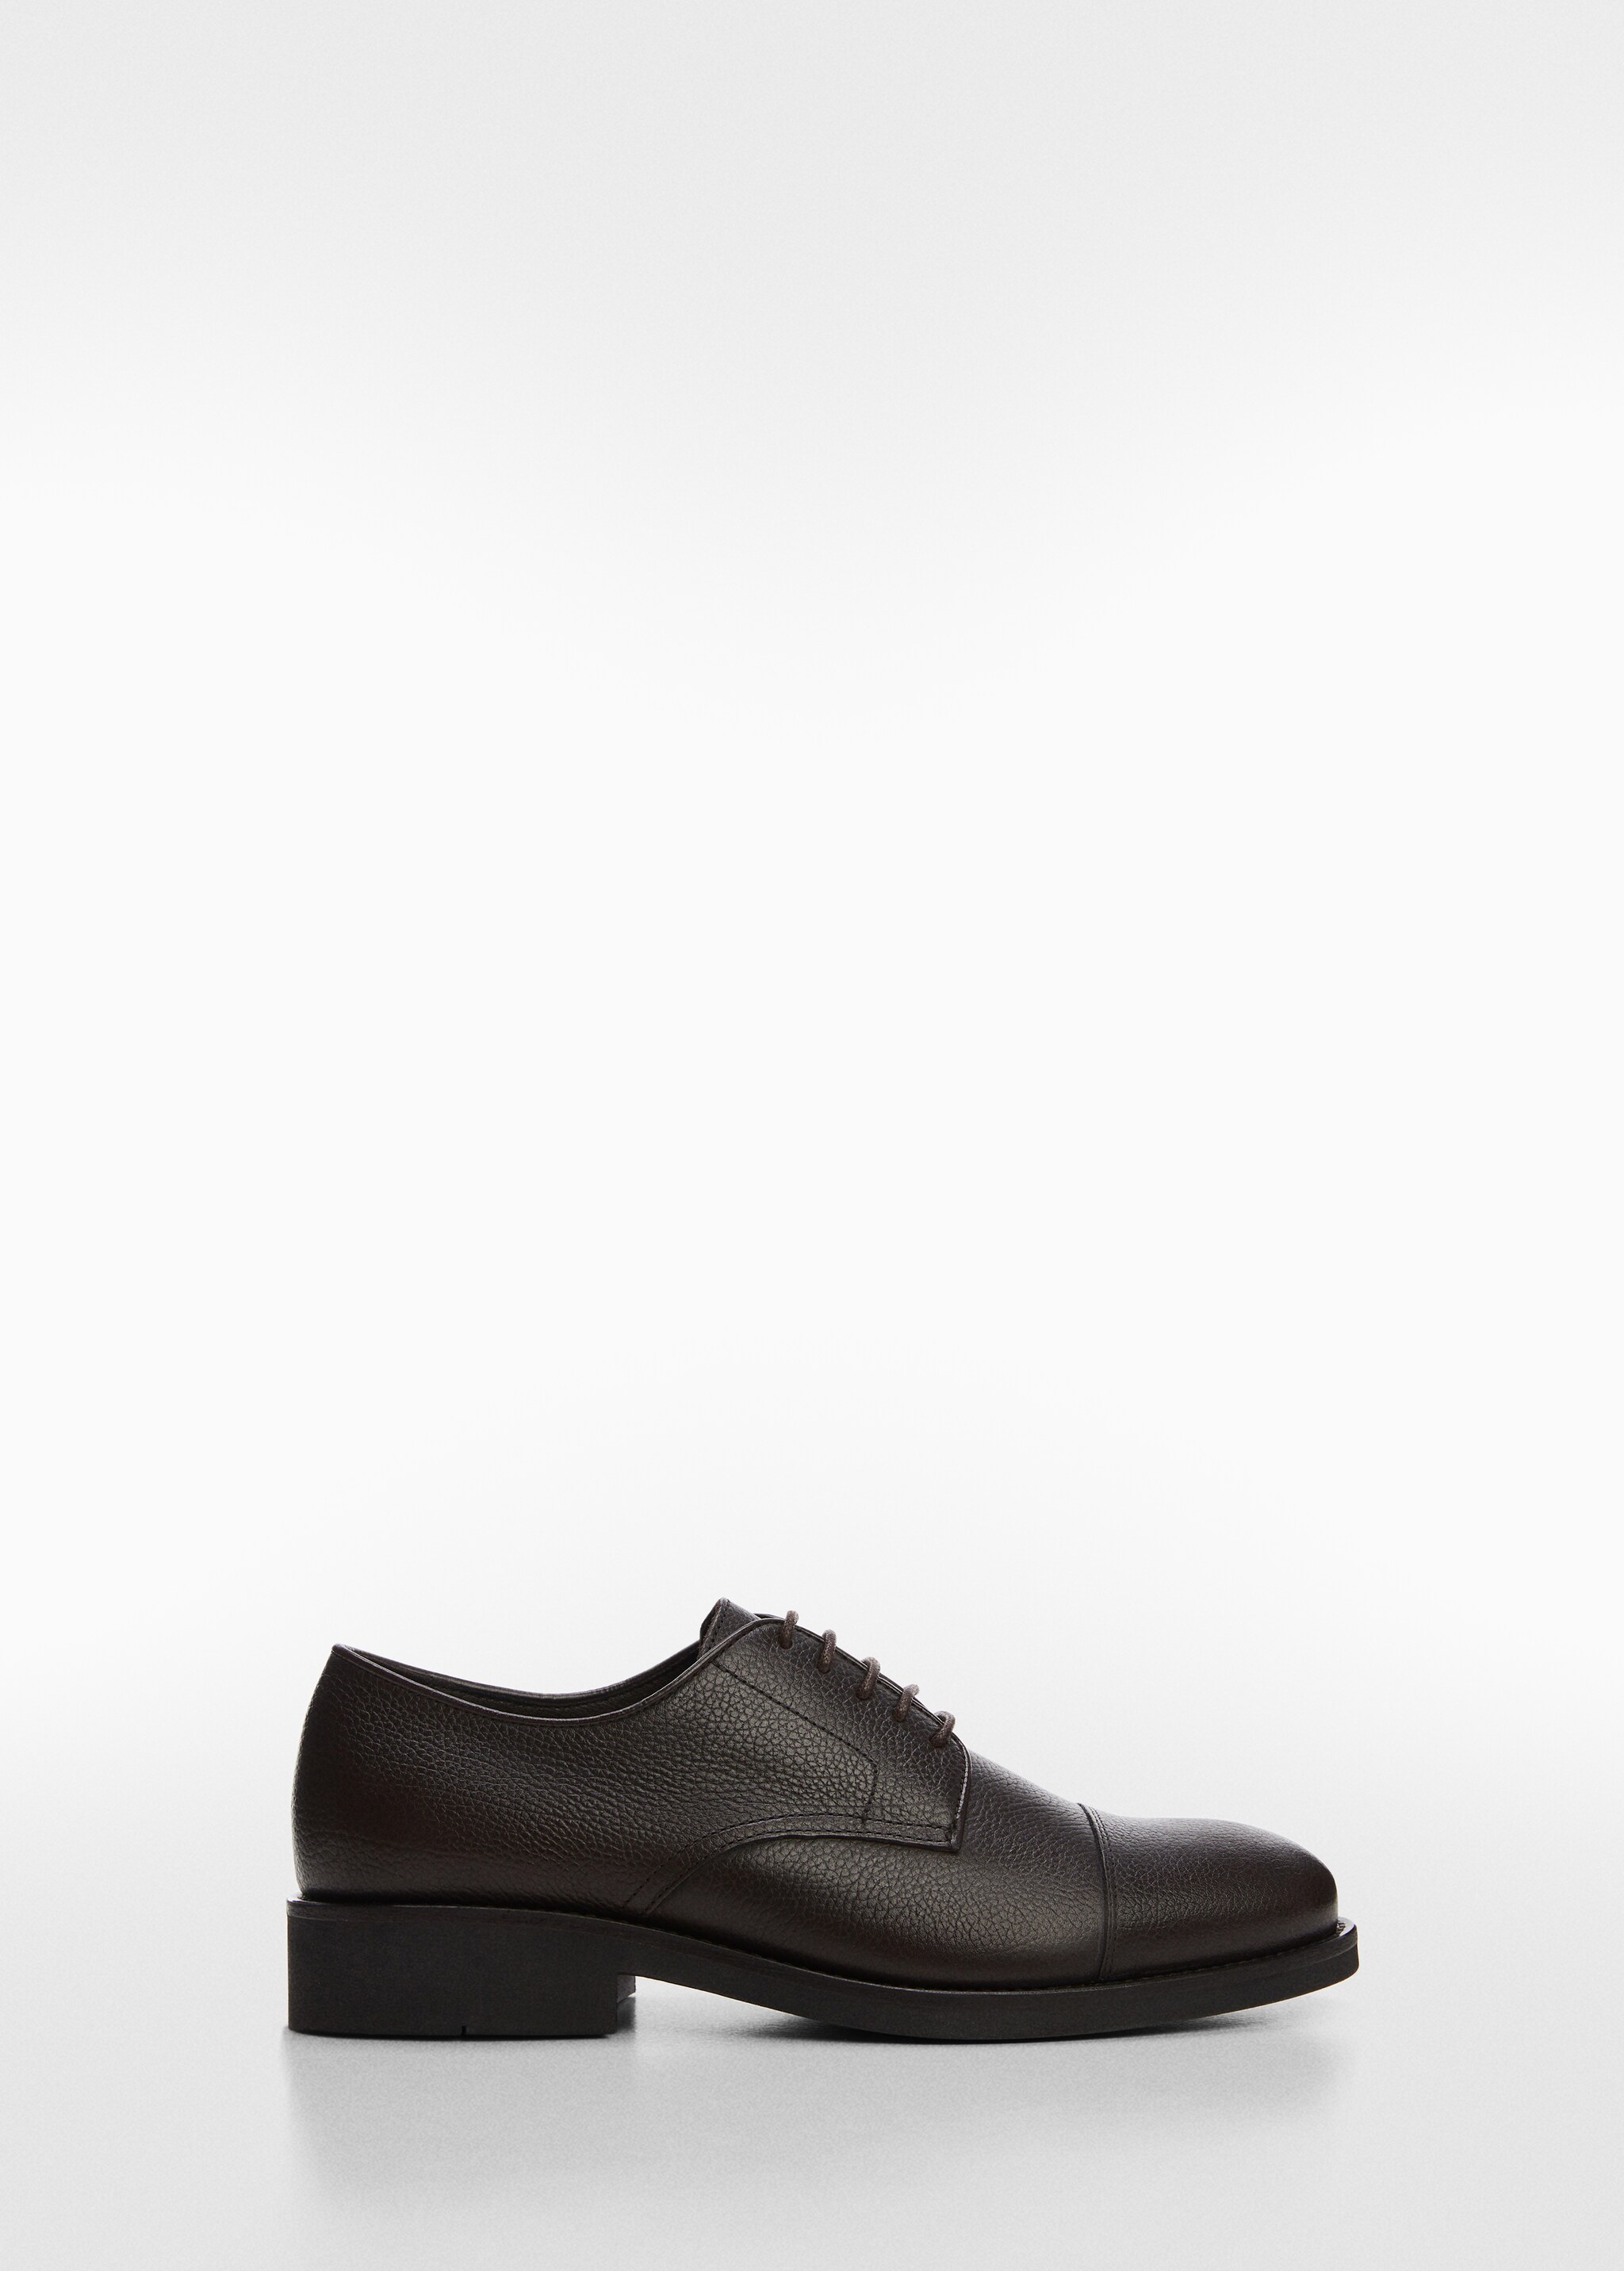 Leather suit shoes - Articol fără model